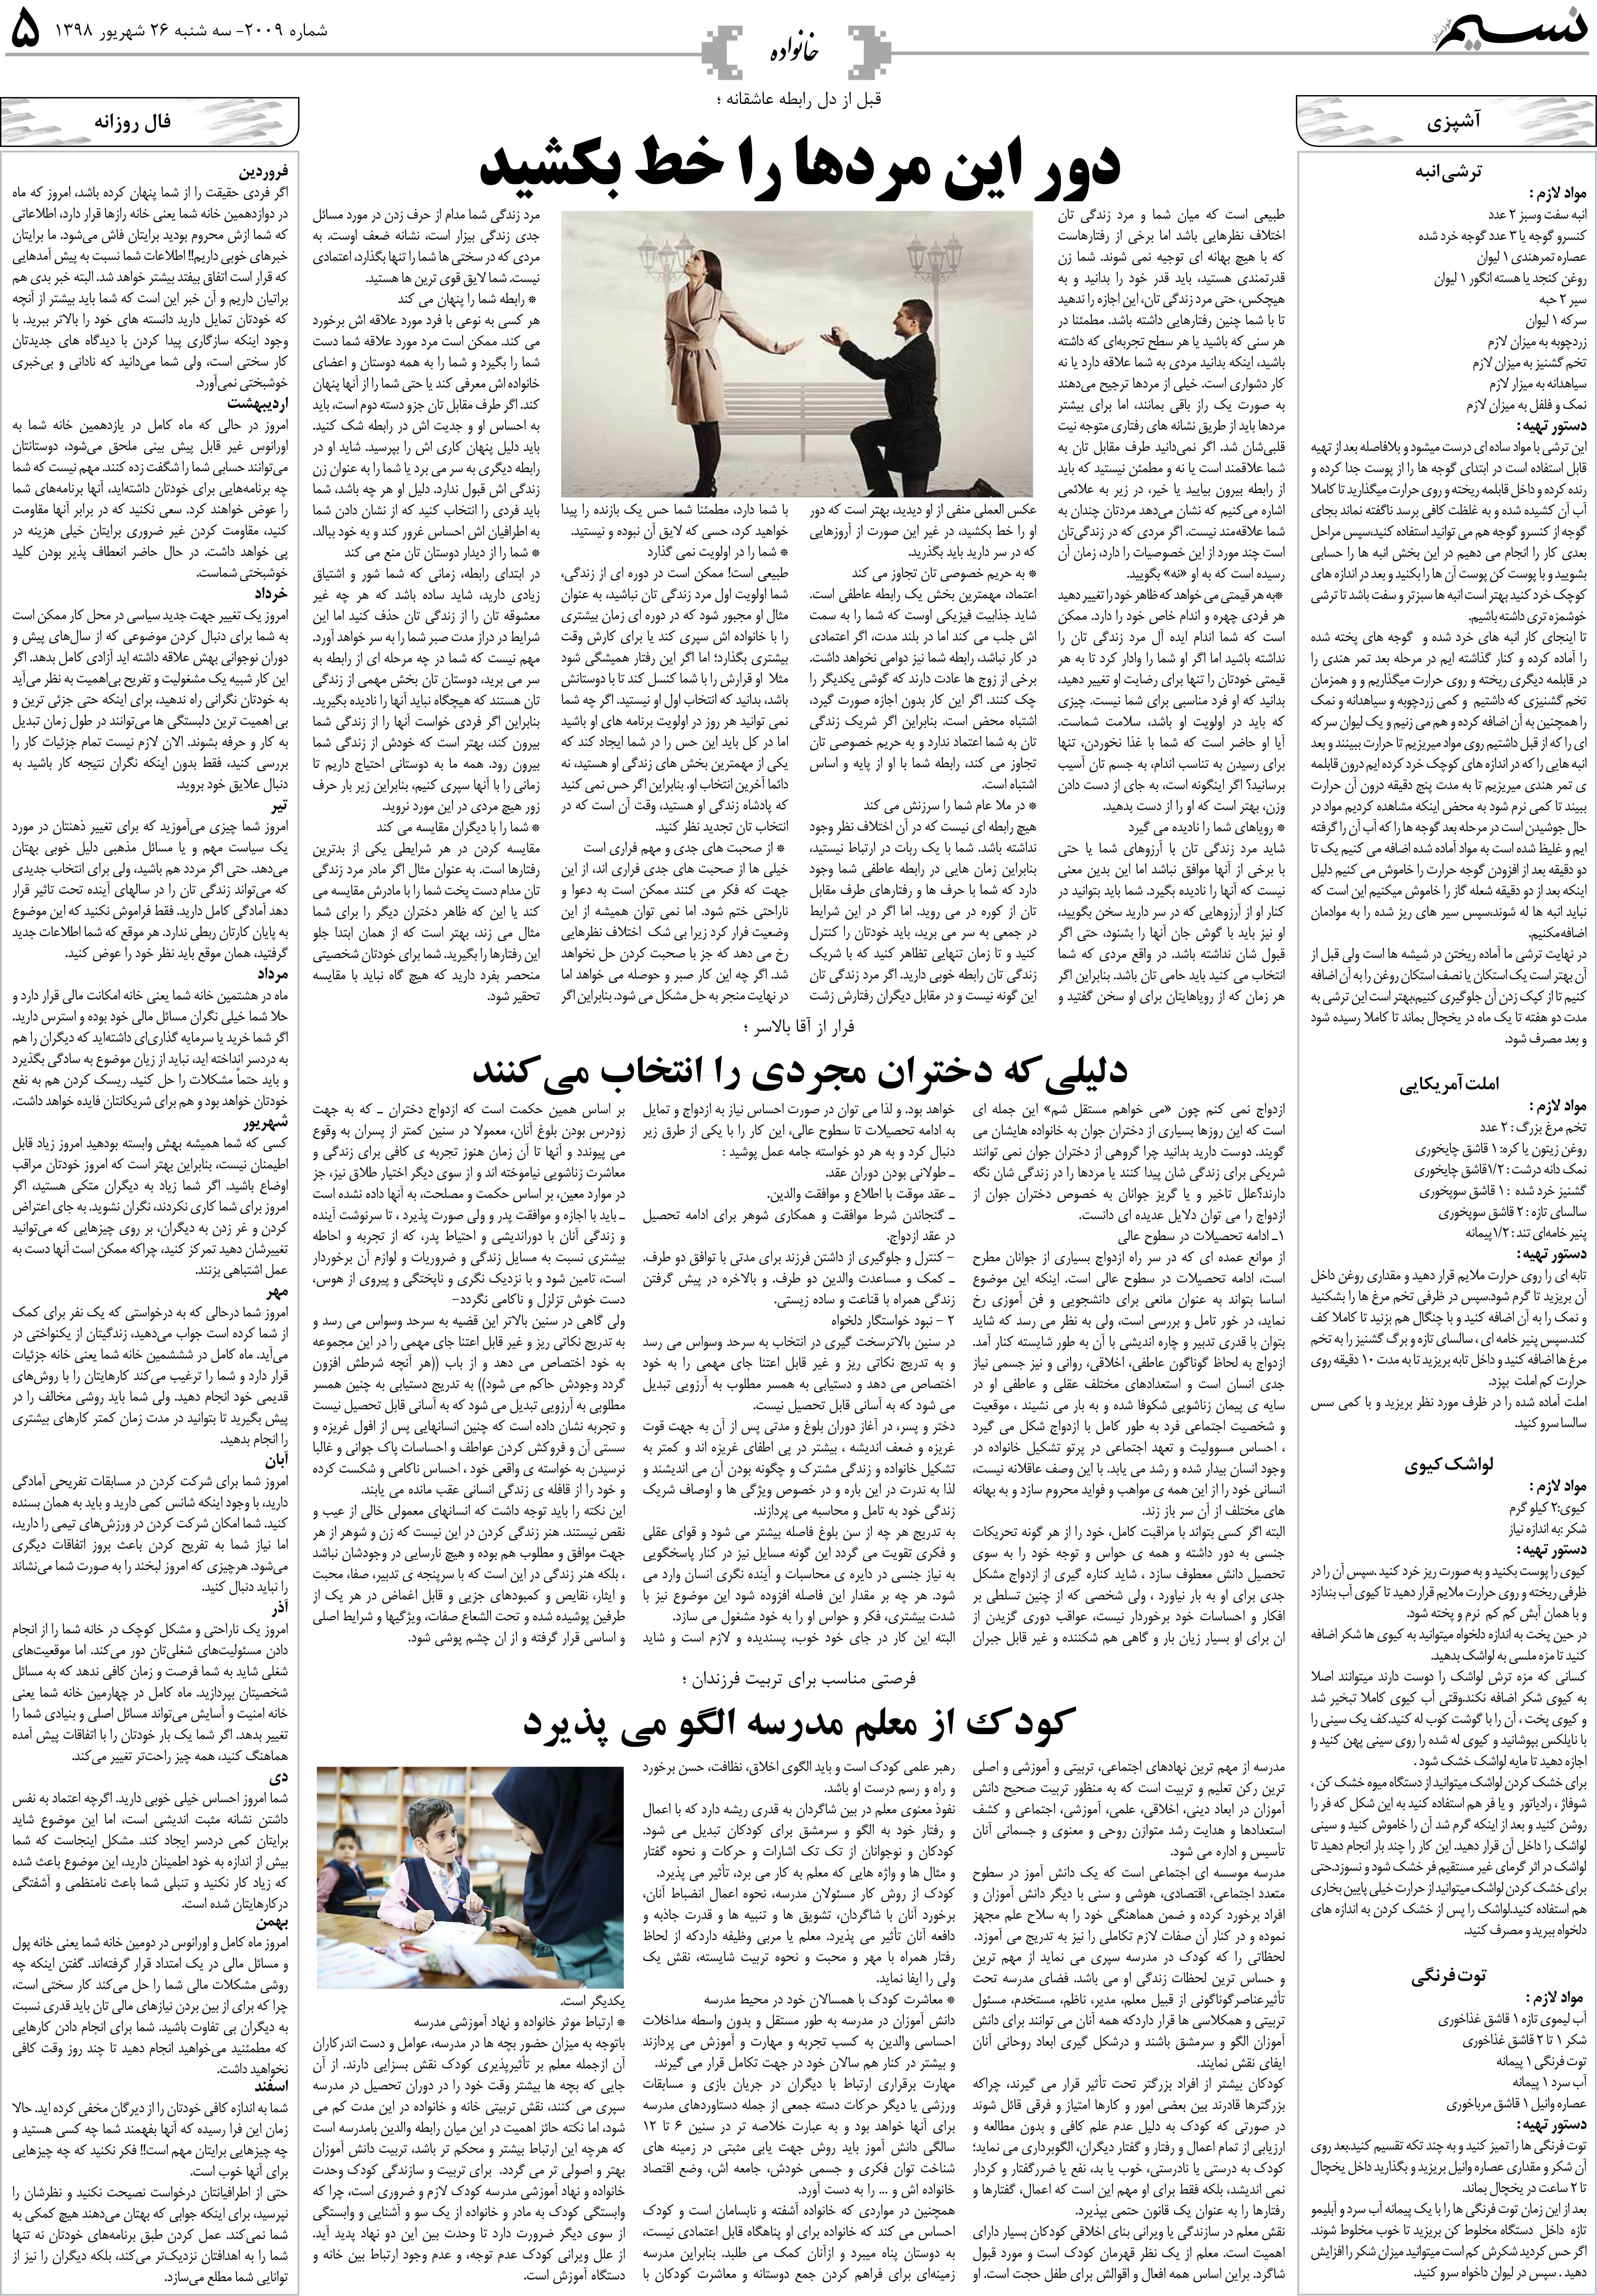 صفحه خانواده روزنامه نسیم شماره 2009